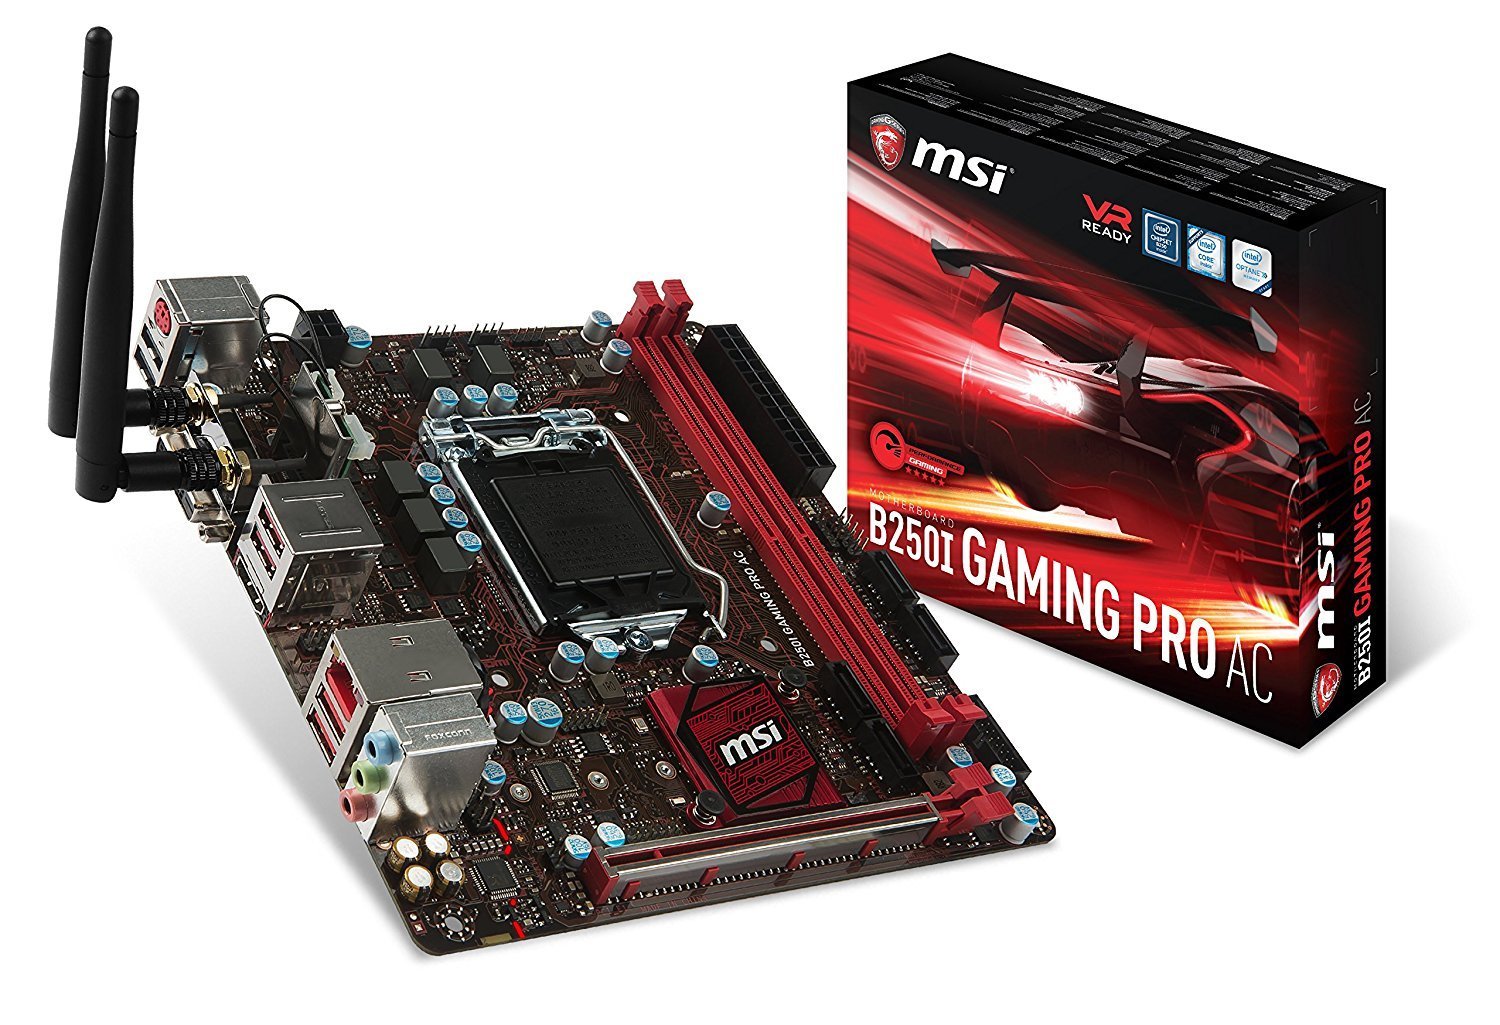 MSI B250I Gaming Pro AC - AMD Mini ITX Motherboard - Store 974 | ستور ٩٧٤